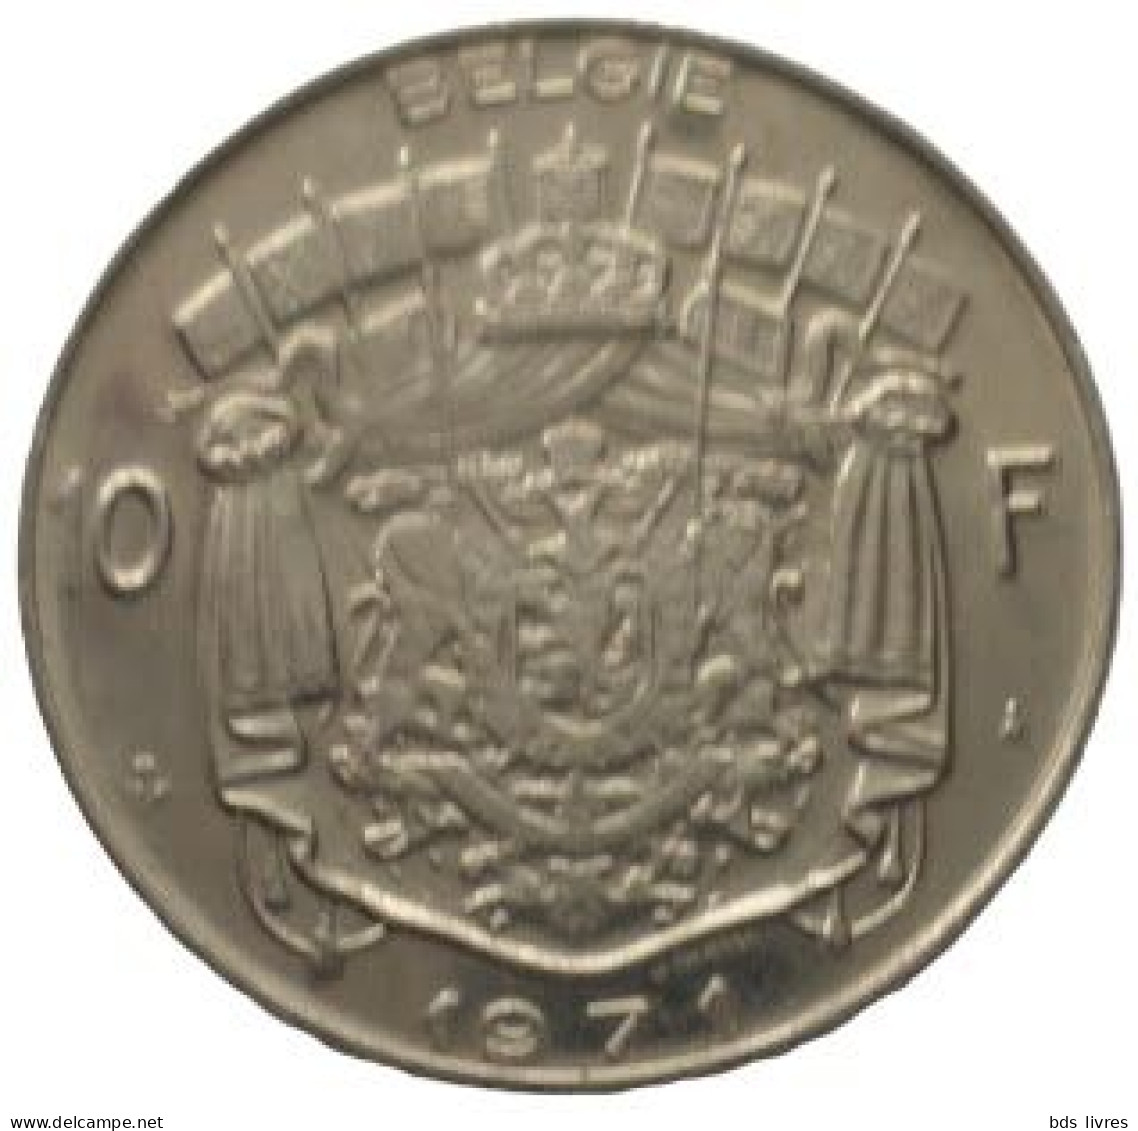 Baudouin BELGIE 10 Frank (10 Francs)  Année 1971 (Flamande)  -- Pièce Non Nettoyée  (voir Images) - 10 Frank